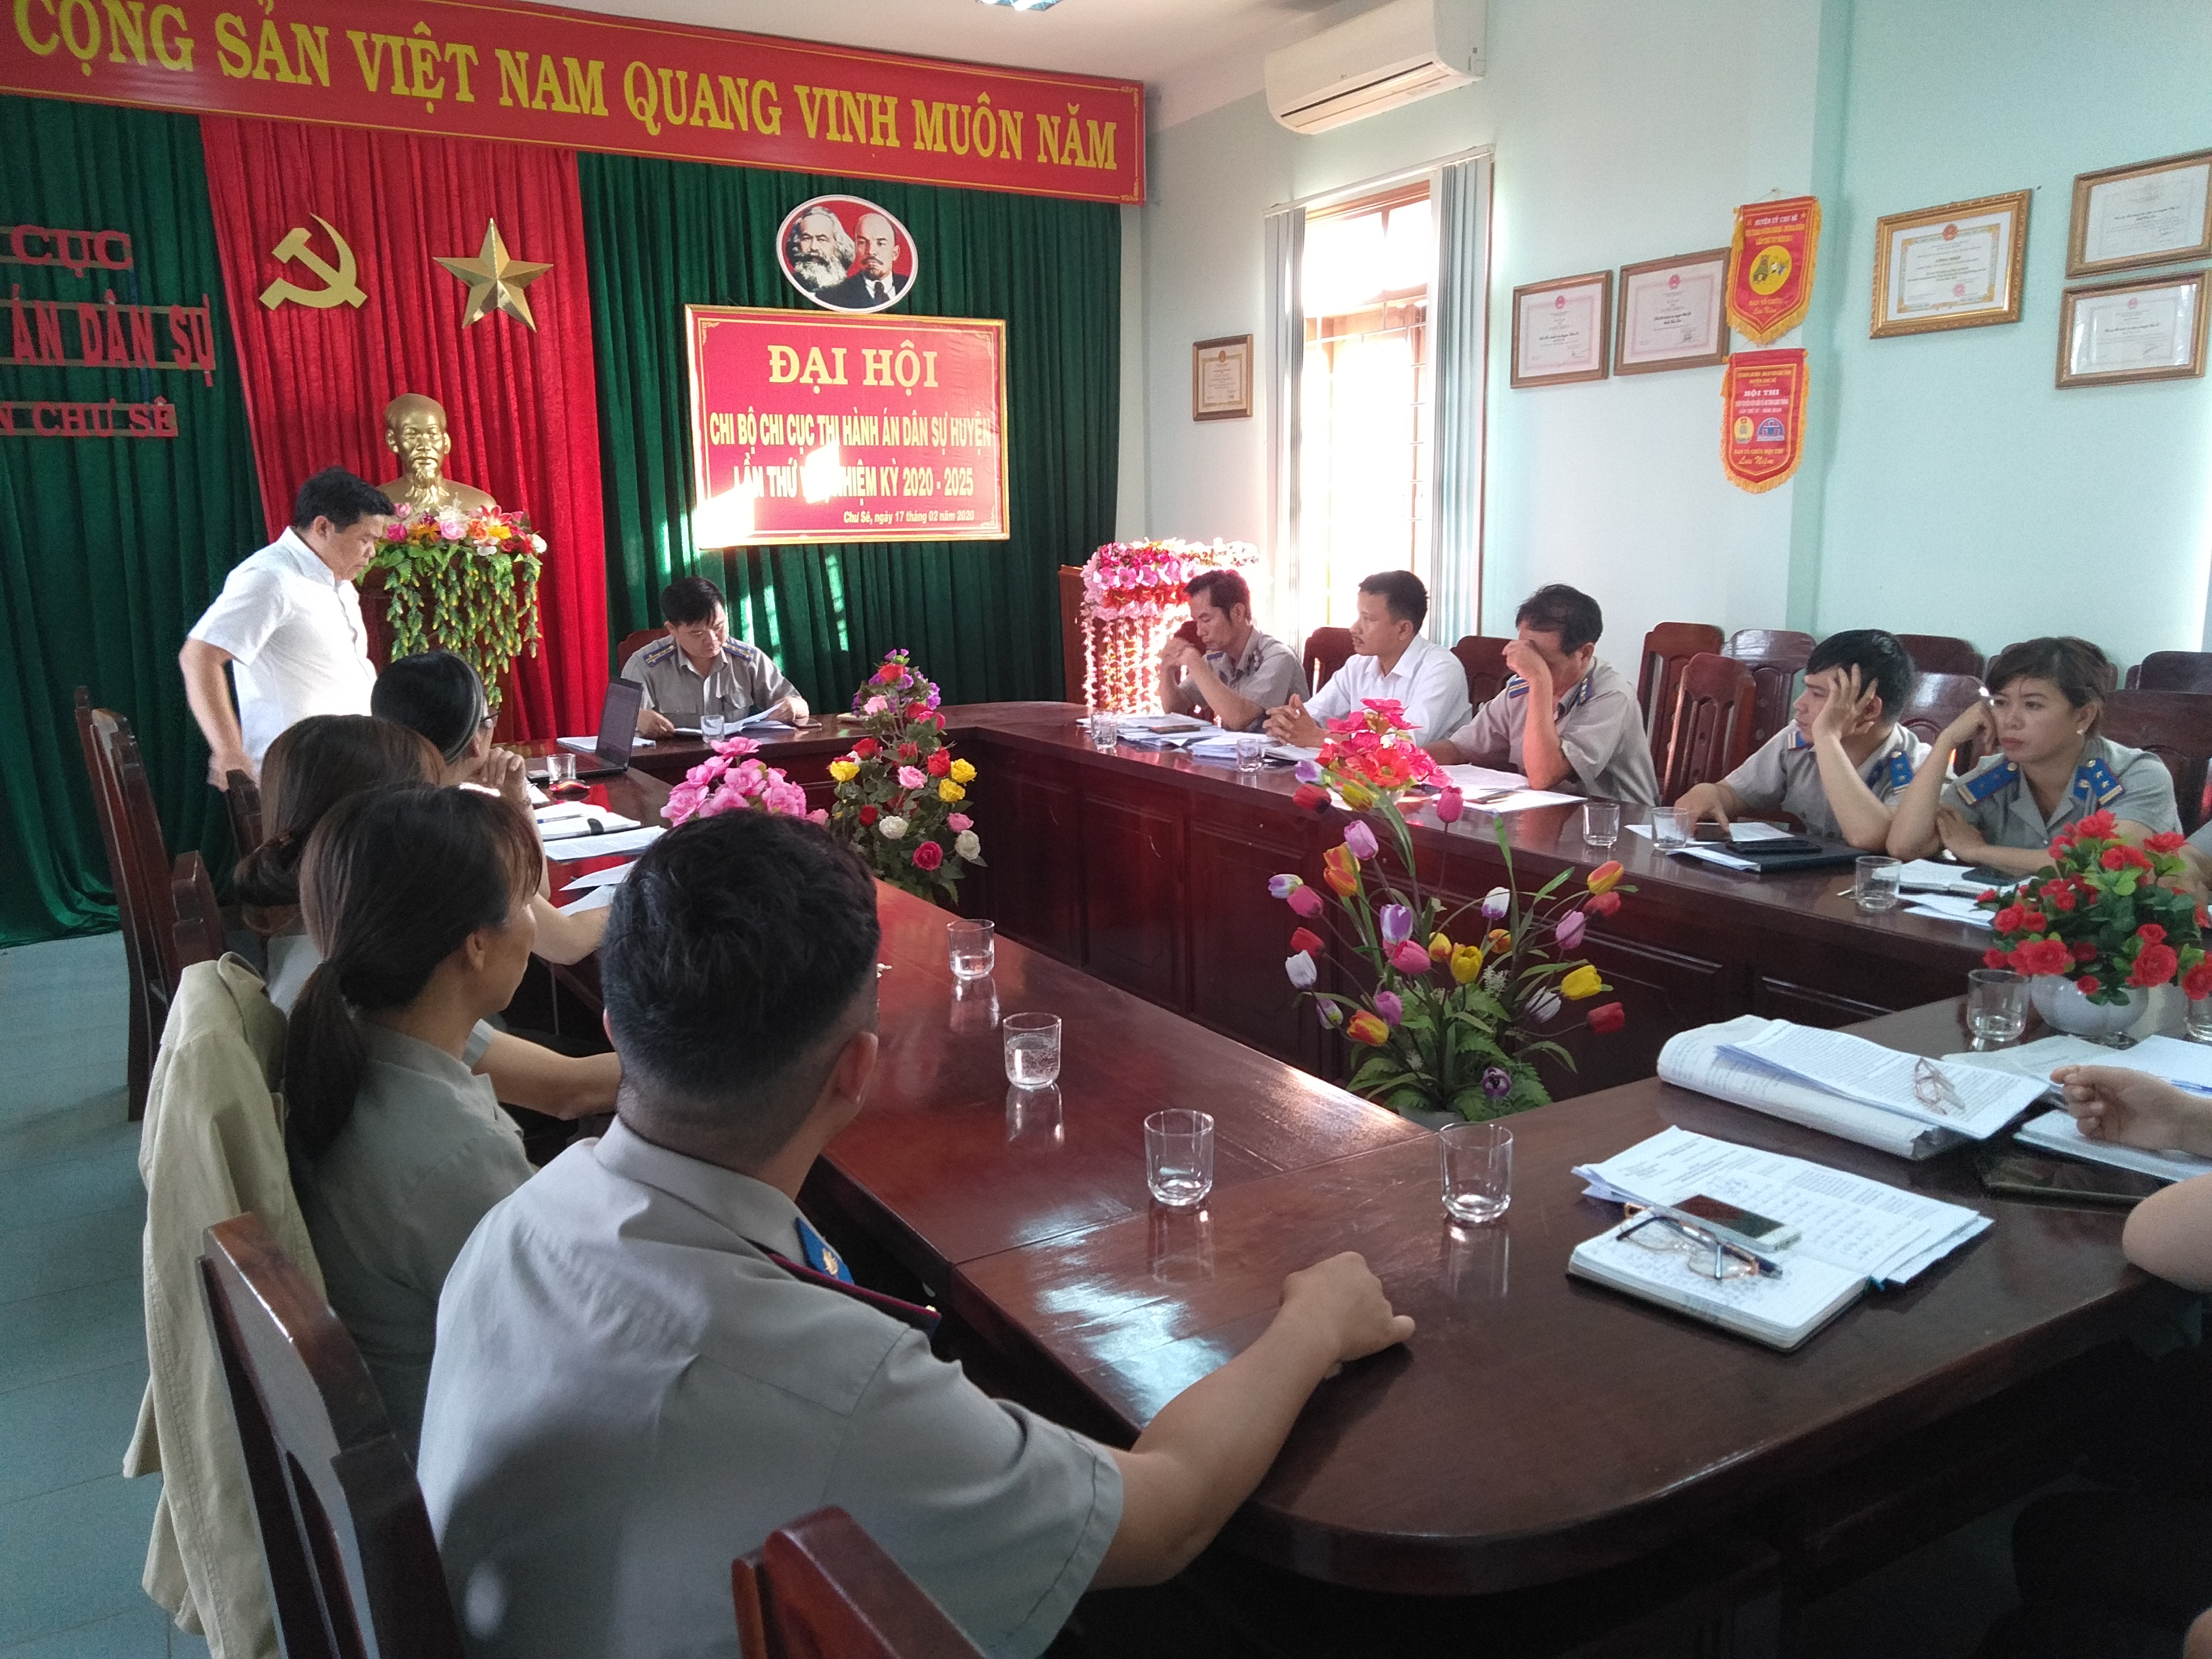 Lãnh đạo Cục làm việc với Chi cục thads huyện Chư sê